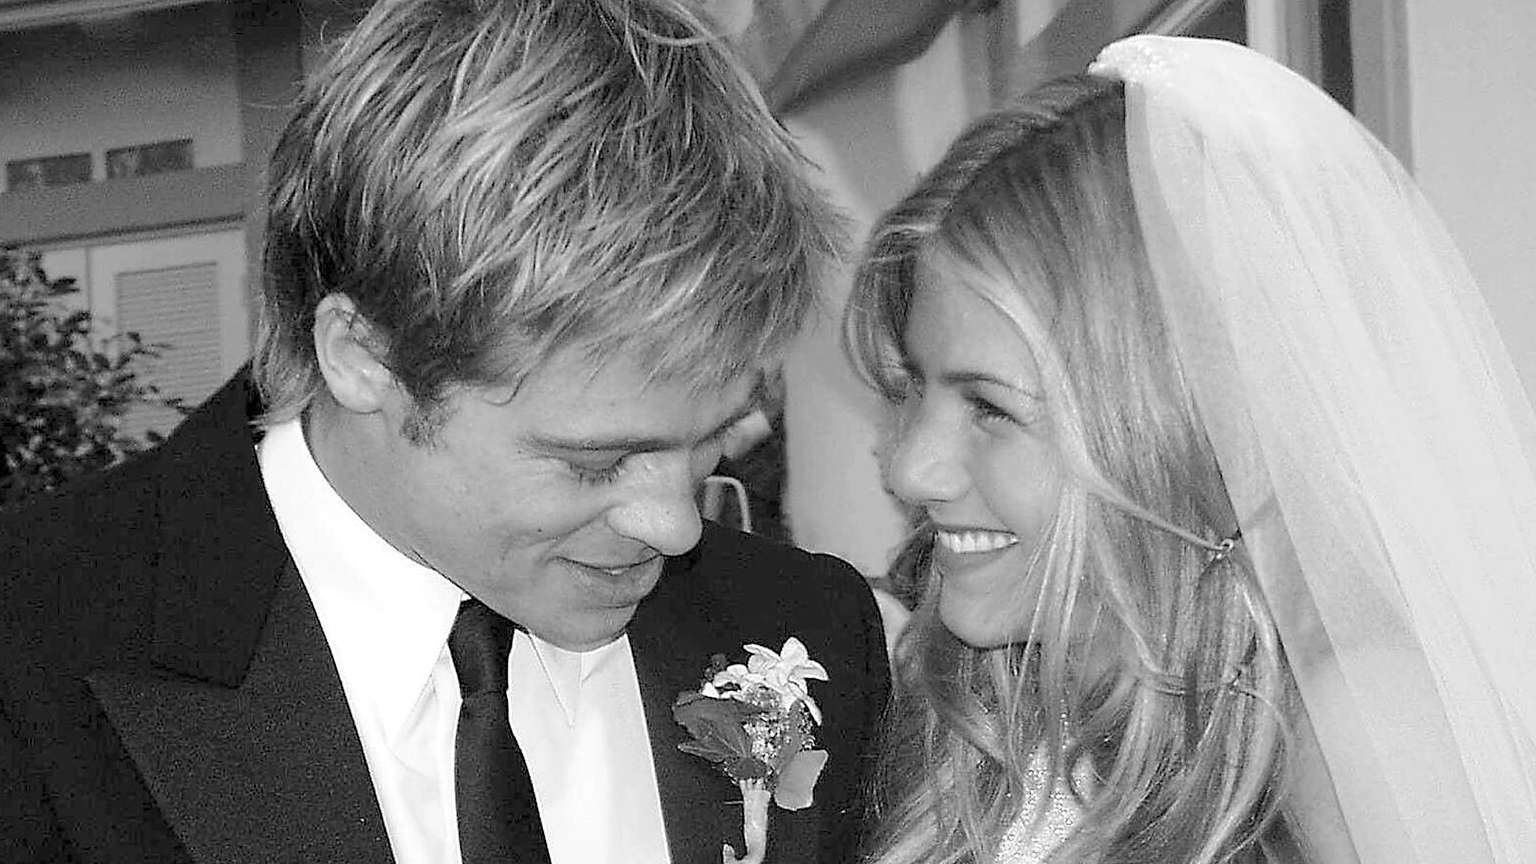 Jennifer Aniston y Brad Pitt el día de su boda. Todo terminó cuando él se enamoró de Angelina Jolie en el set de "El señor y la señora Smith", a finales de 2004 